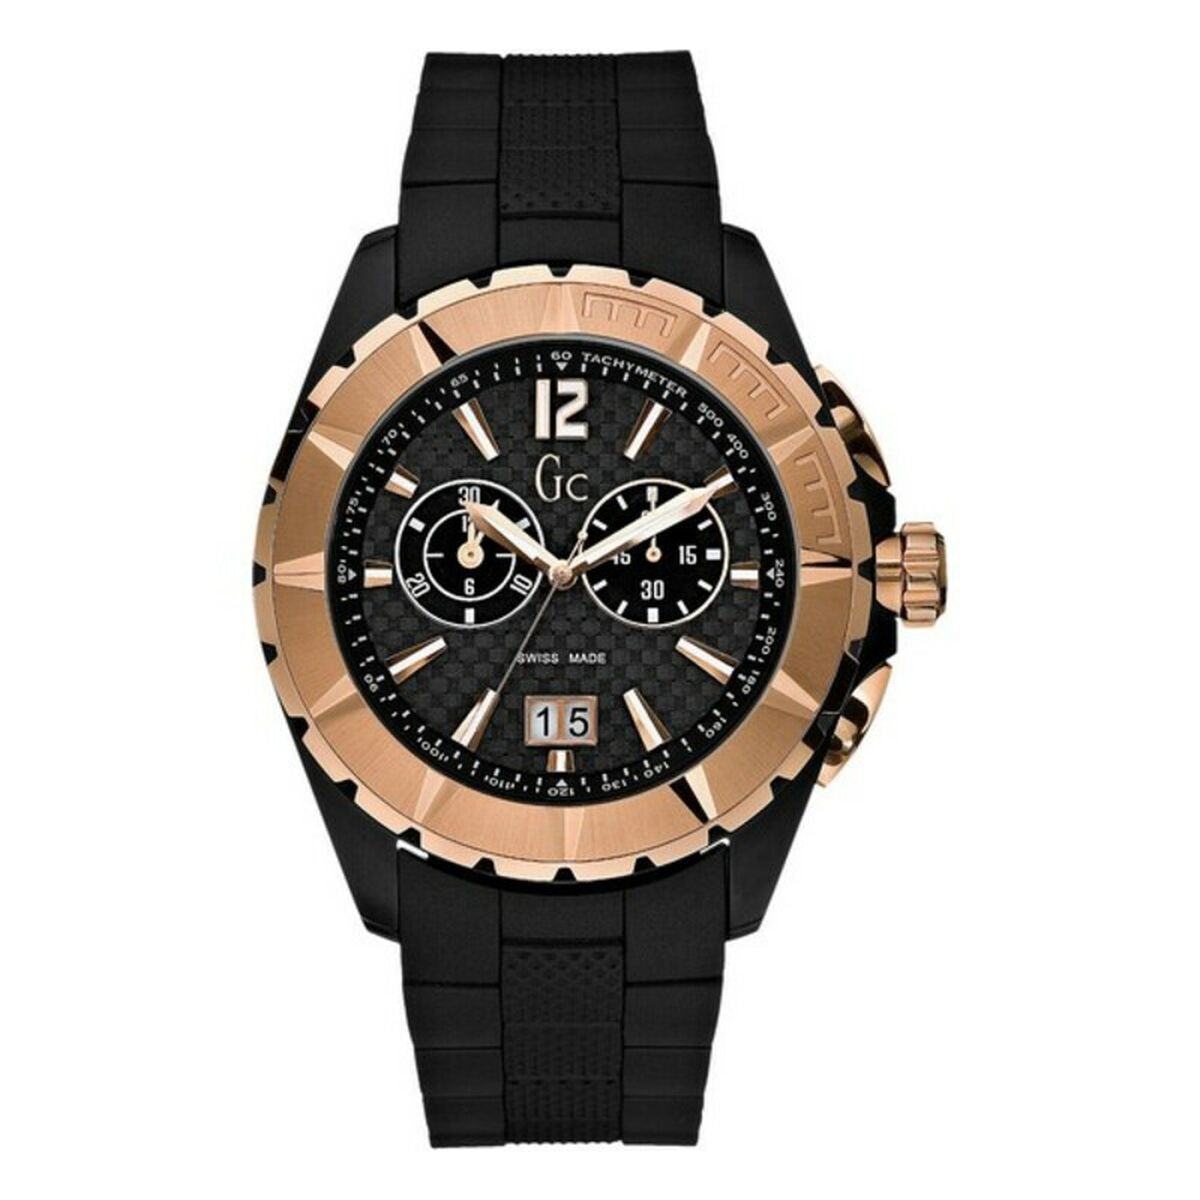 Kaufe Herrenuhr GC Watches 45005G1 (Ø 42 mm) bei AWK Flagship um € 198.00